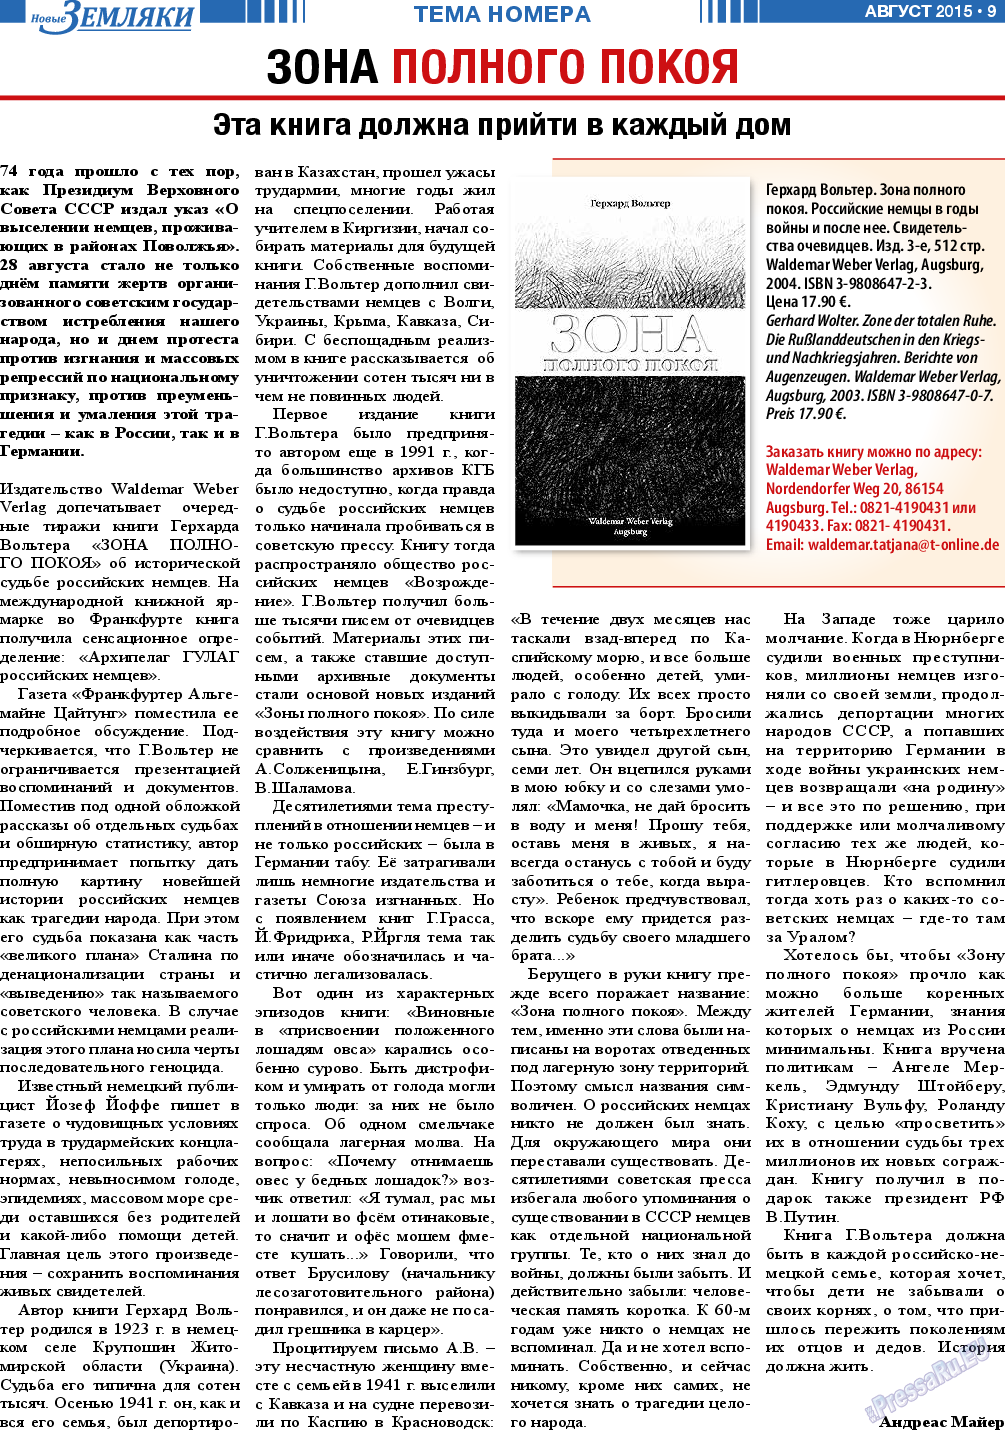 Новые Земляки (газета). 2015 год, номер 8, стр. 9